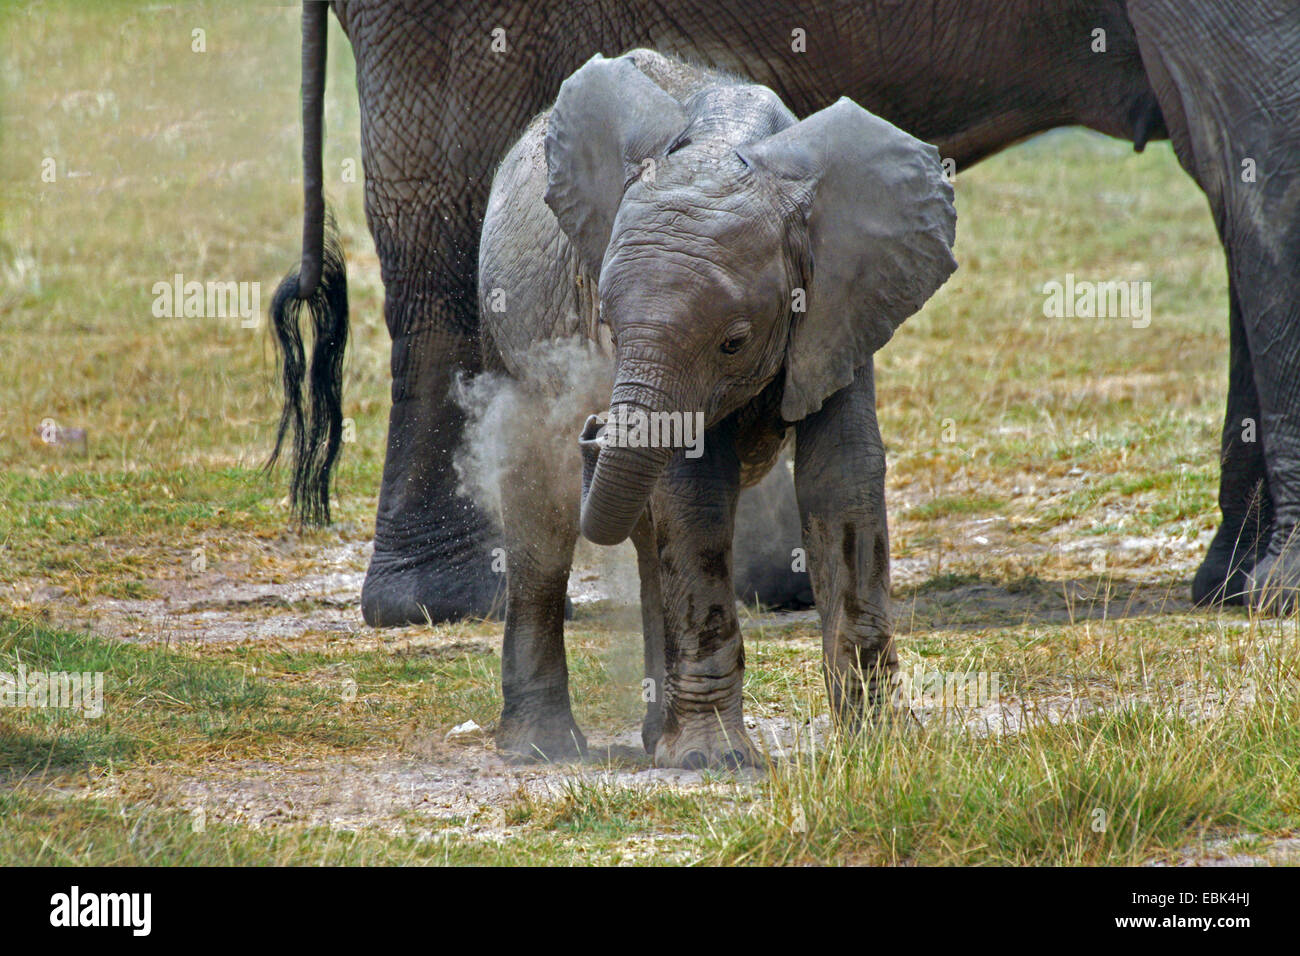 African elephant (Loxodonta africana), baby elephant dust bathing, Kenya, Amboseli National Park Stock Photo